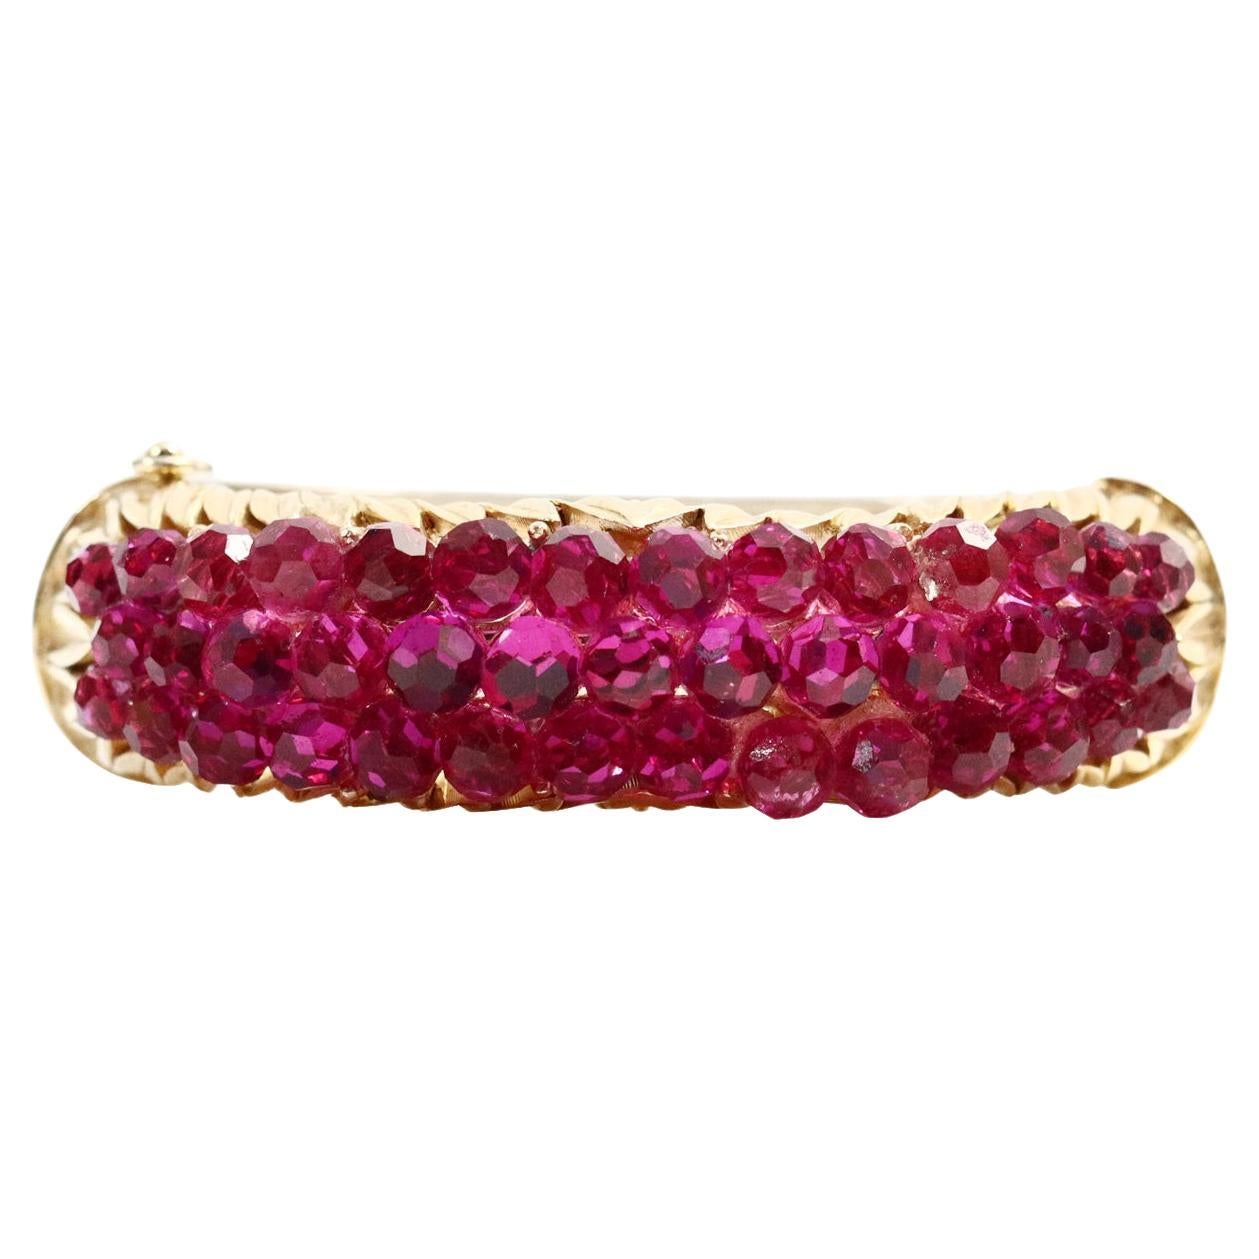 Vintage Trifari Gold-Ton-Armband mit rosa Perlen. Ovales, passendes Armband mit vielen fusciafarbenen Perlenstücken, die oben zusammenlaufen. Gut gemacht und solide. Alleine oder in Kombination mit anderen Stücken ist es ein echter Hingucker. Dieses